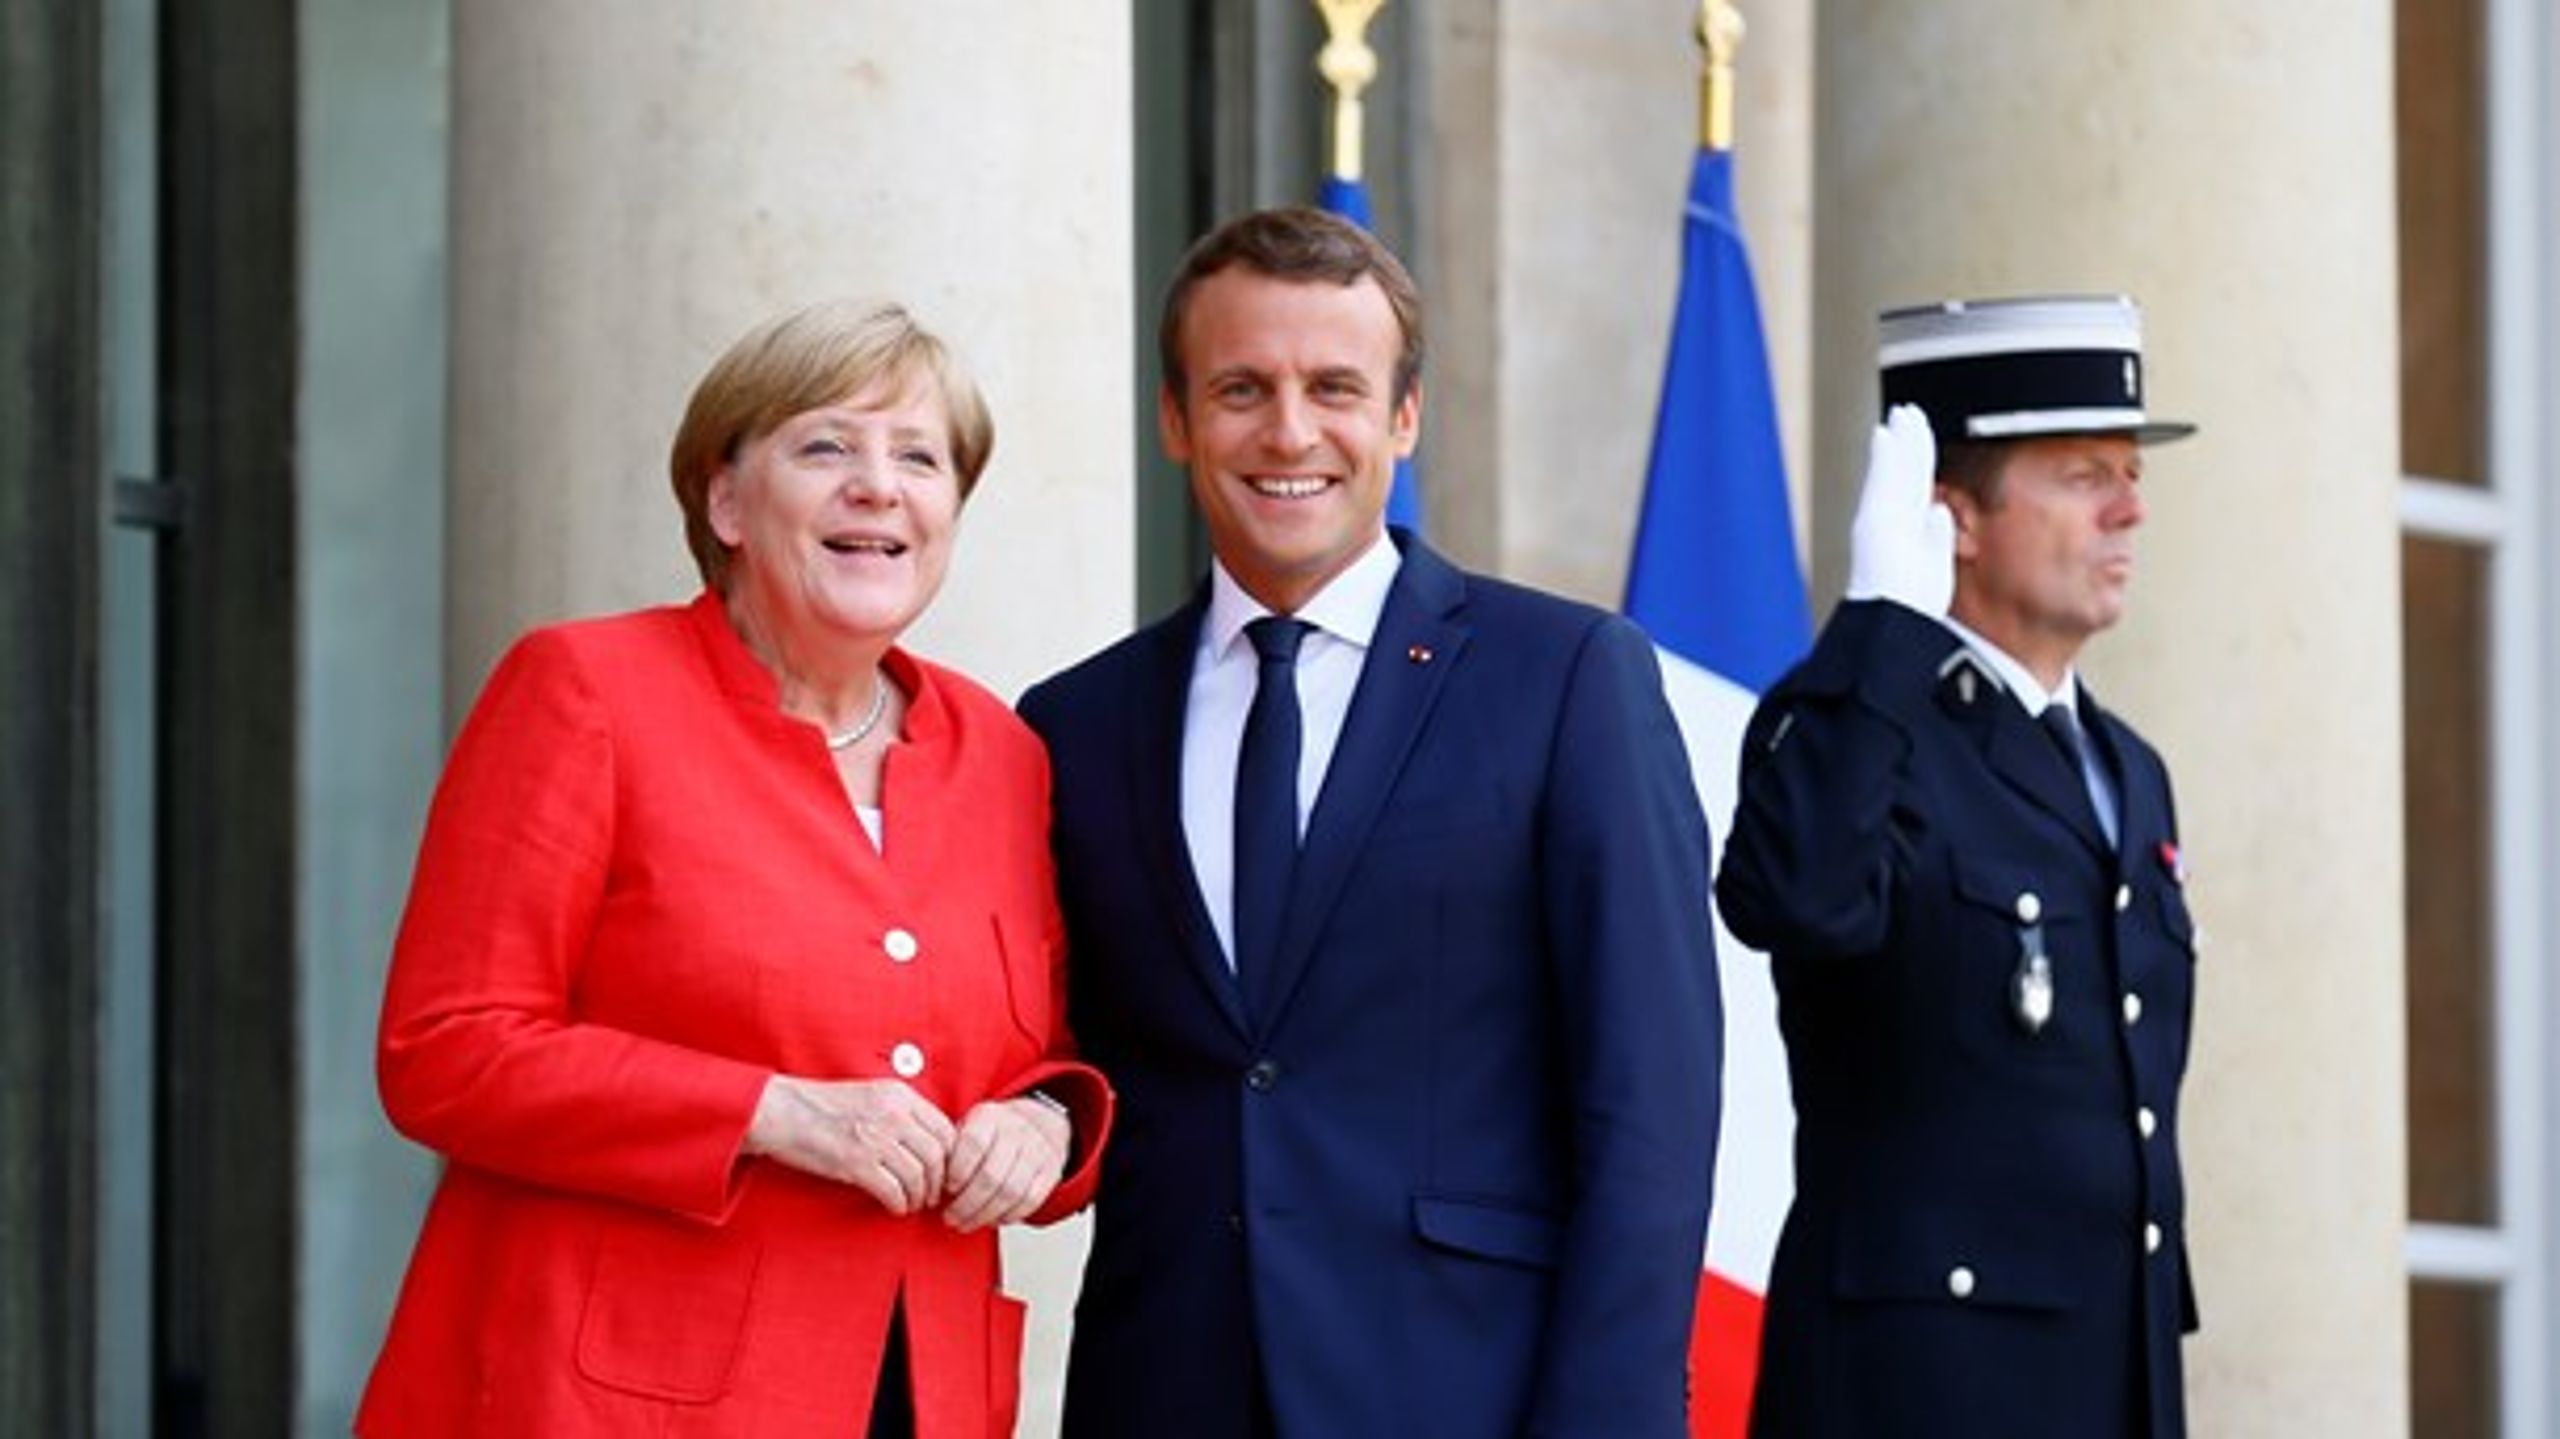 Med Angela Merkel og Emmanuel Macron ved roret kan vi kigge fremad mod et mere driftssikkert EU-år, skriver Jan E. Jørgensen (V).